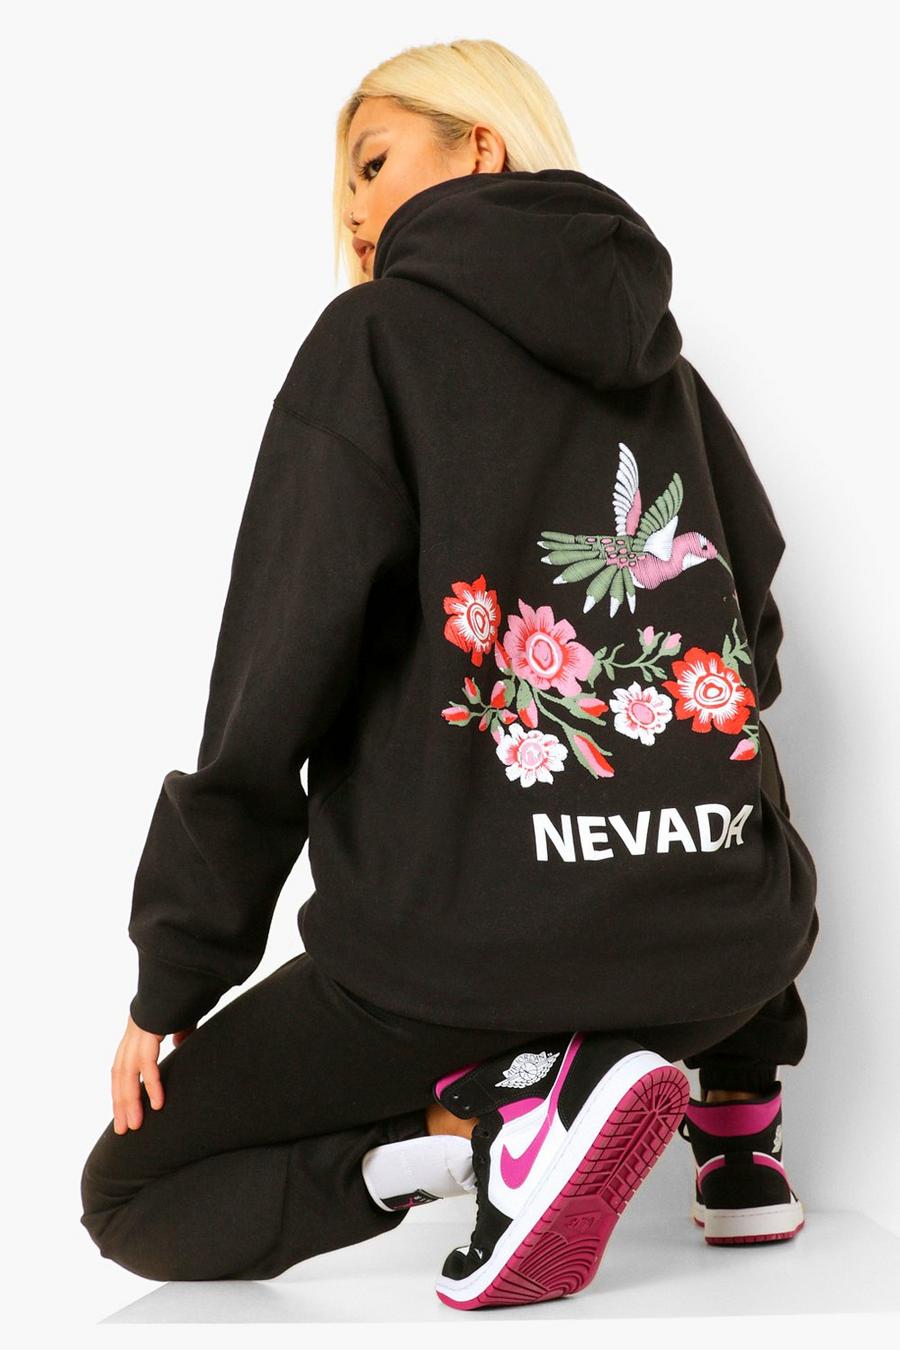 Sudadera con capucha y estampado "Nevada" en la espalda Petite, Negro image number 1